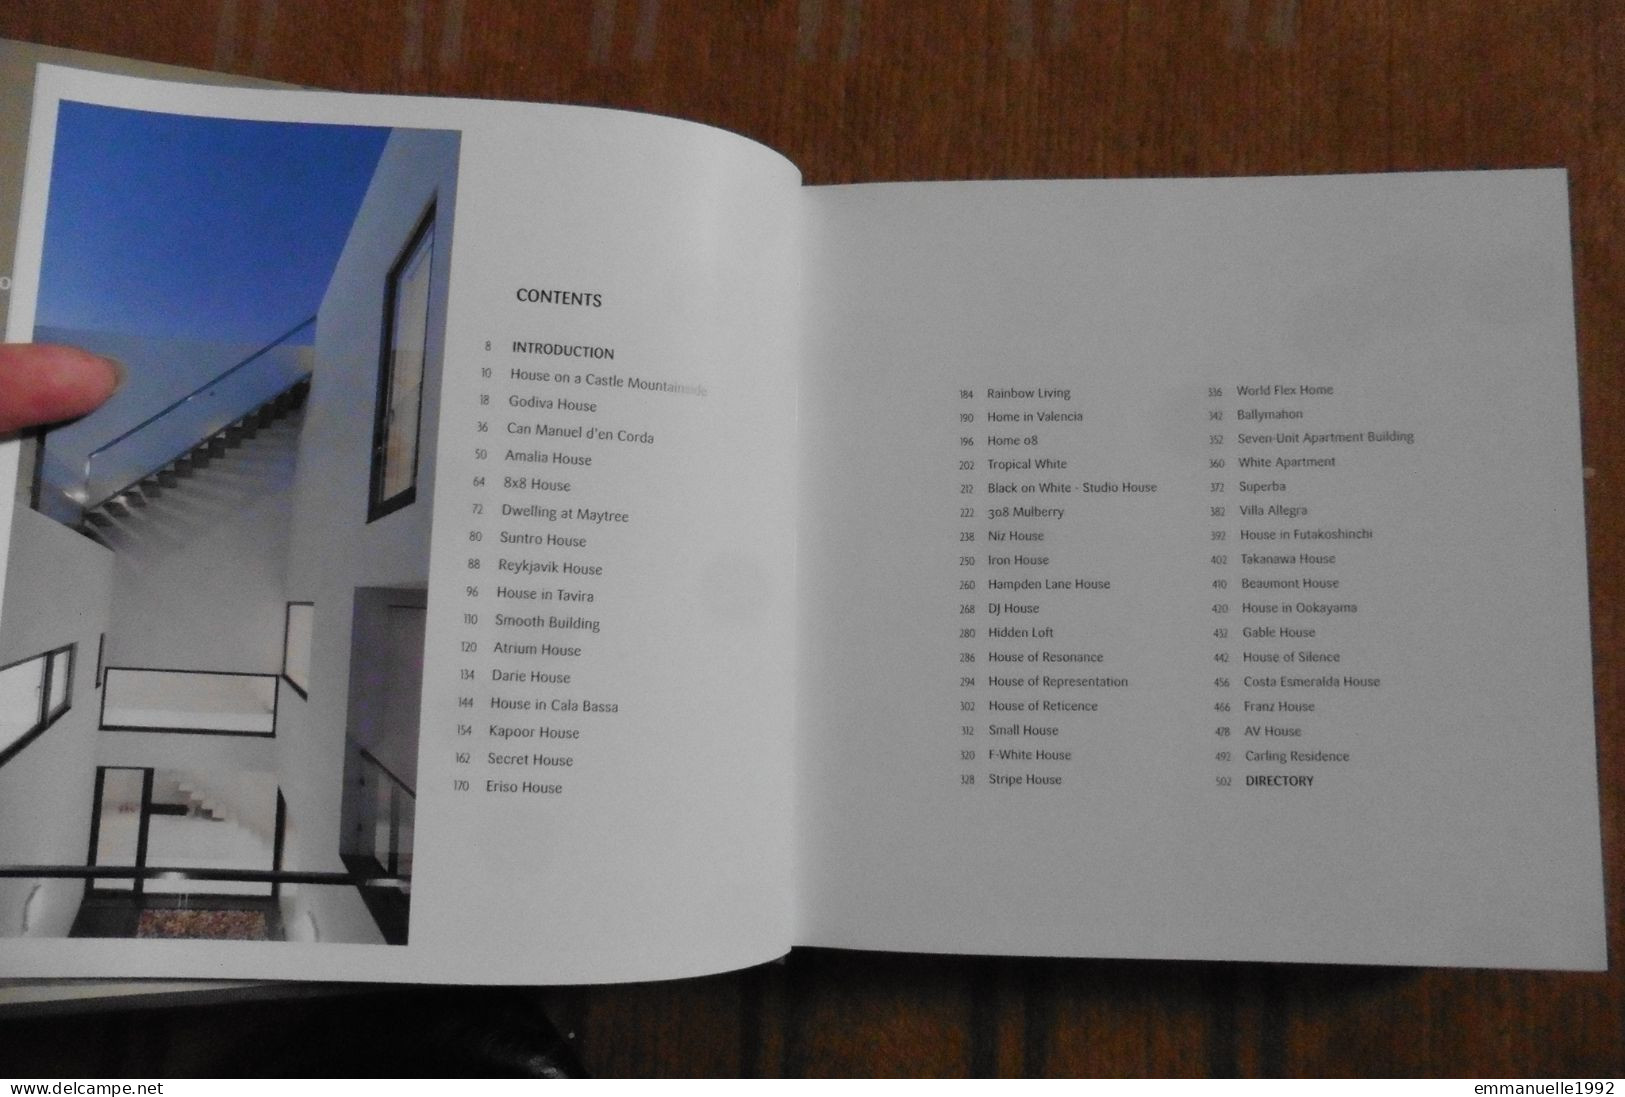 Livre 150 Best Minimalist House Ideas 2013 Harper Design - Modern Architecture - English Text - Bellas Artes